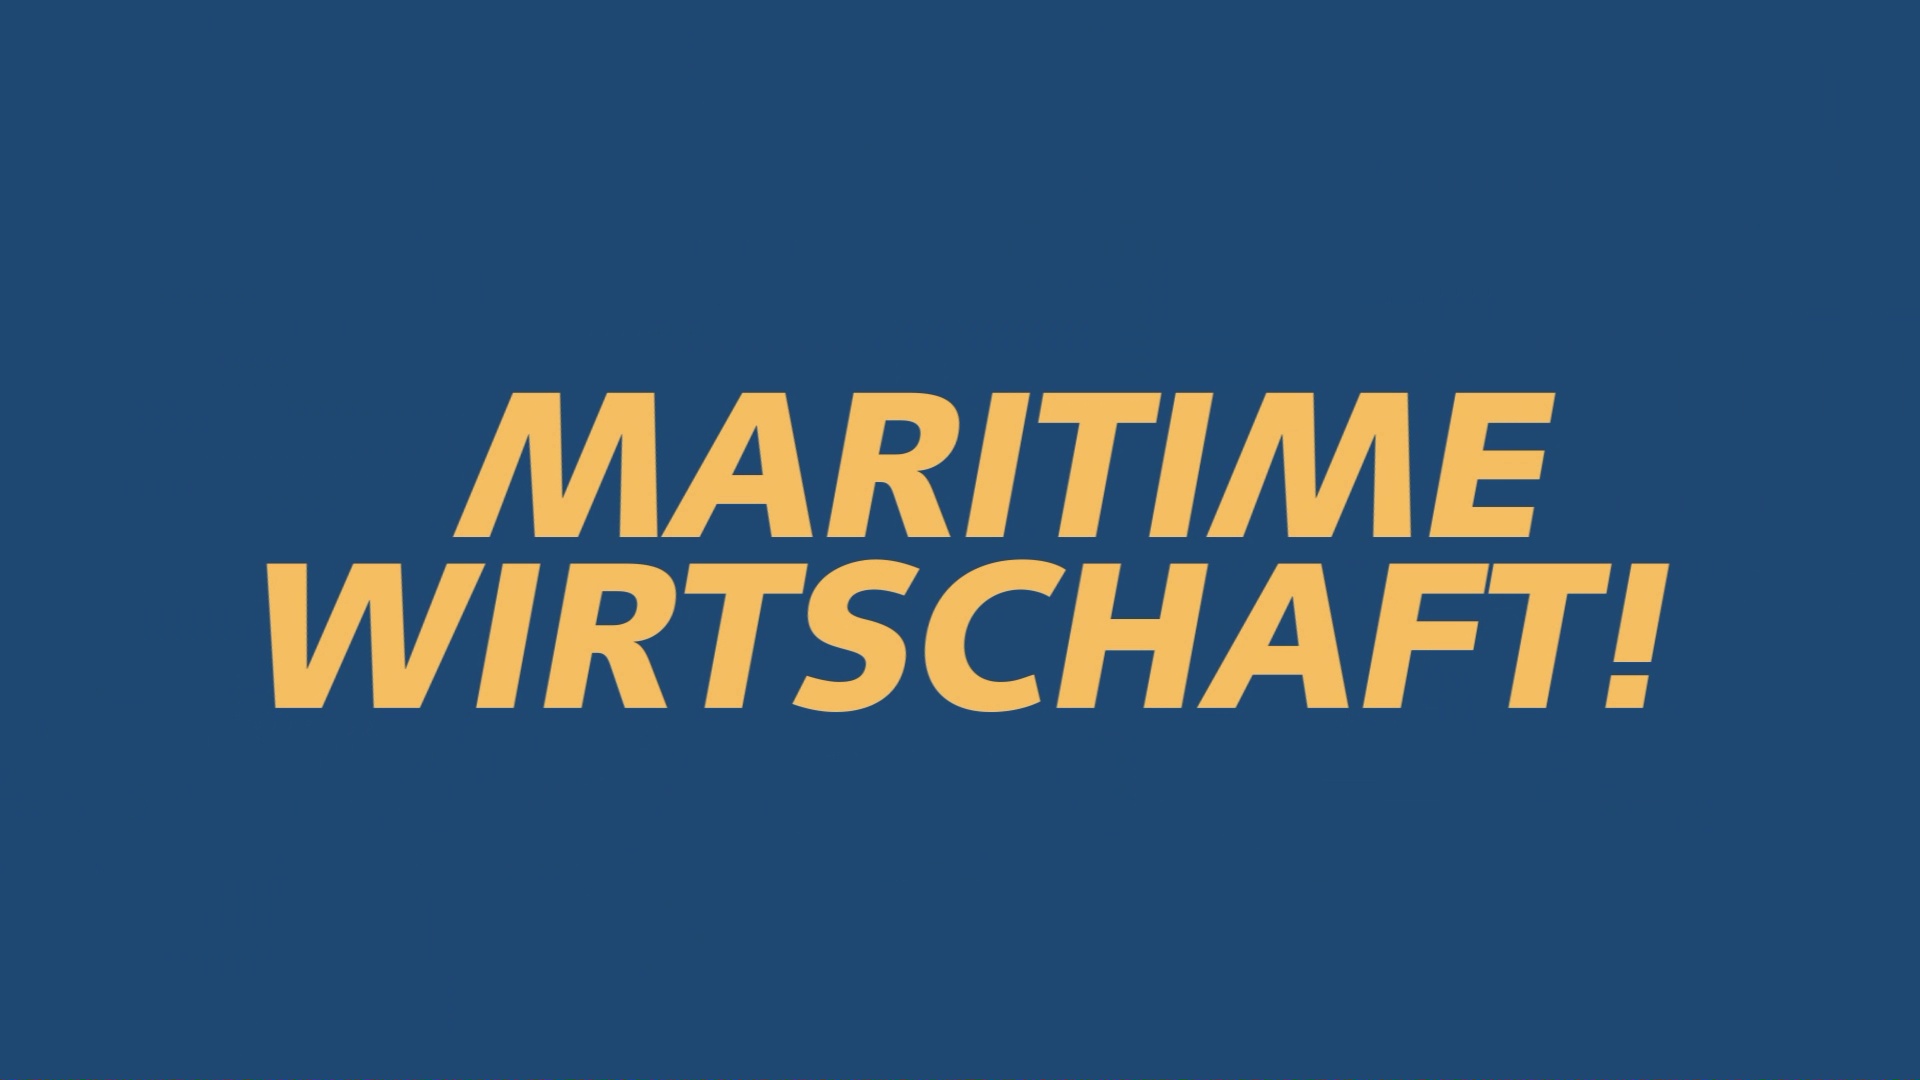 Nationale Maritime Konferenz 2023